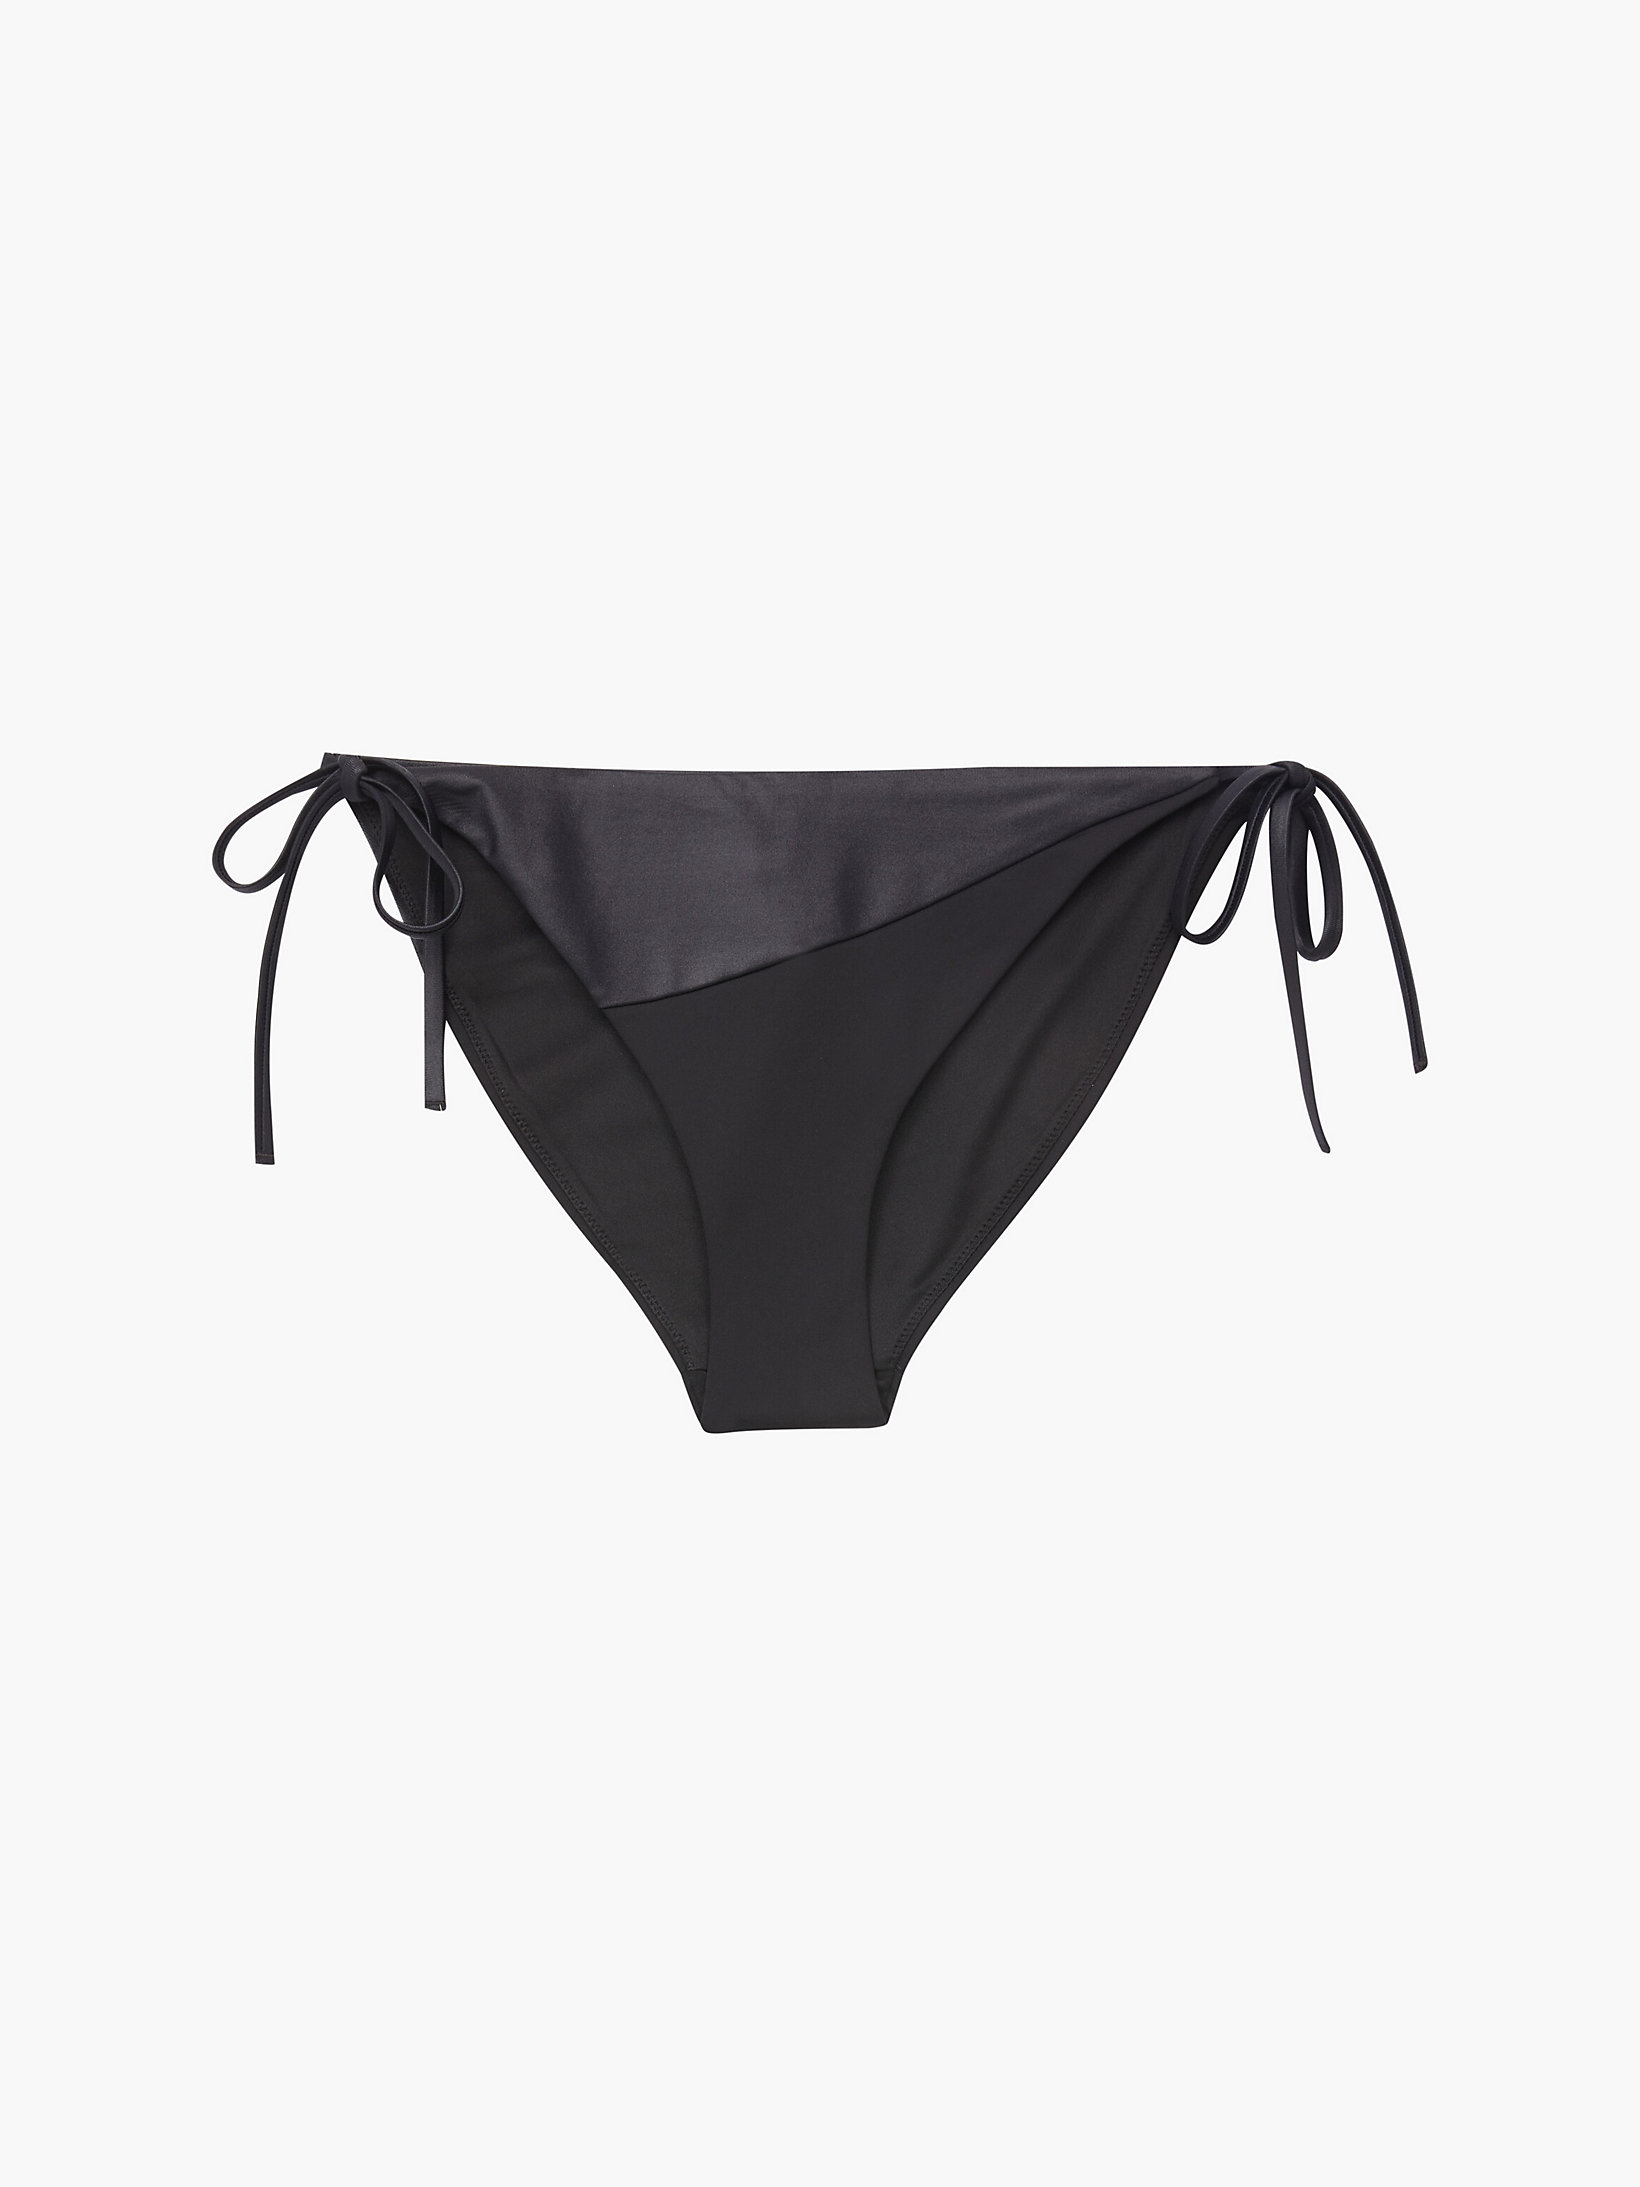 Pvh Black Tie Side Bikini Bottom - Core Essentials undefined women Calvin Klein